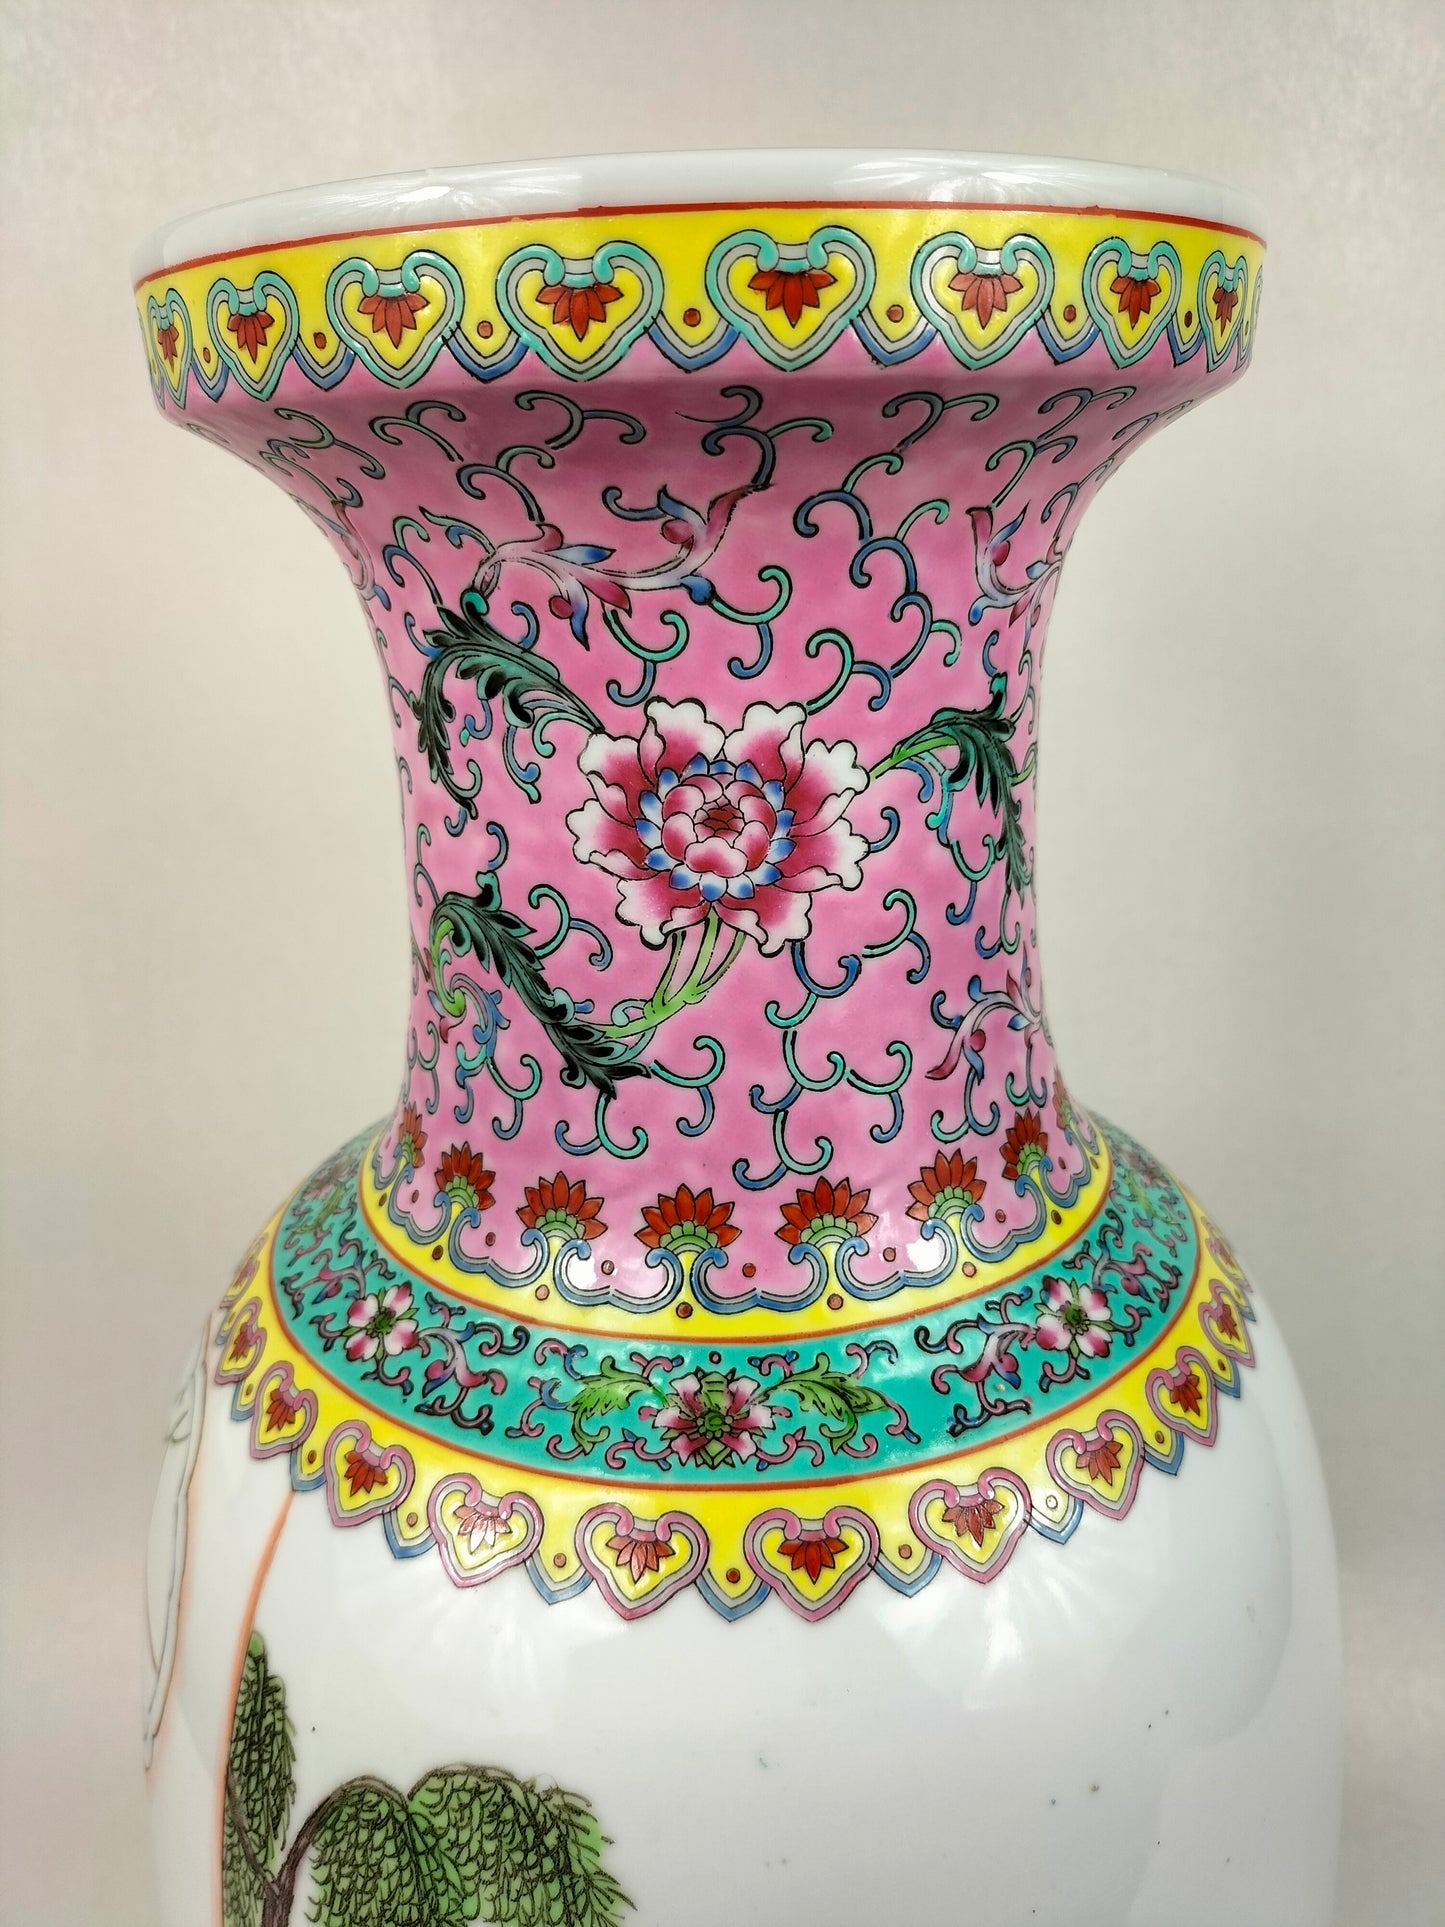 大型中国粉彩花瓶，装饰有园林景观 // 景德镇 - 20 世纪